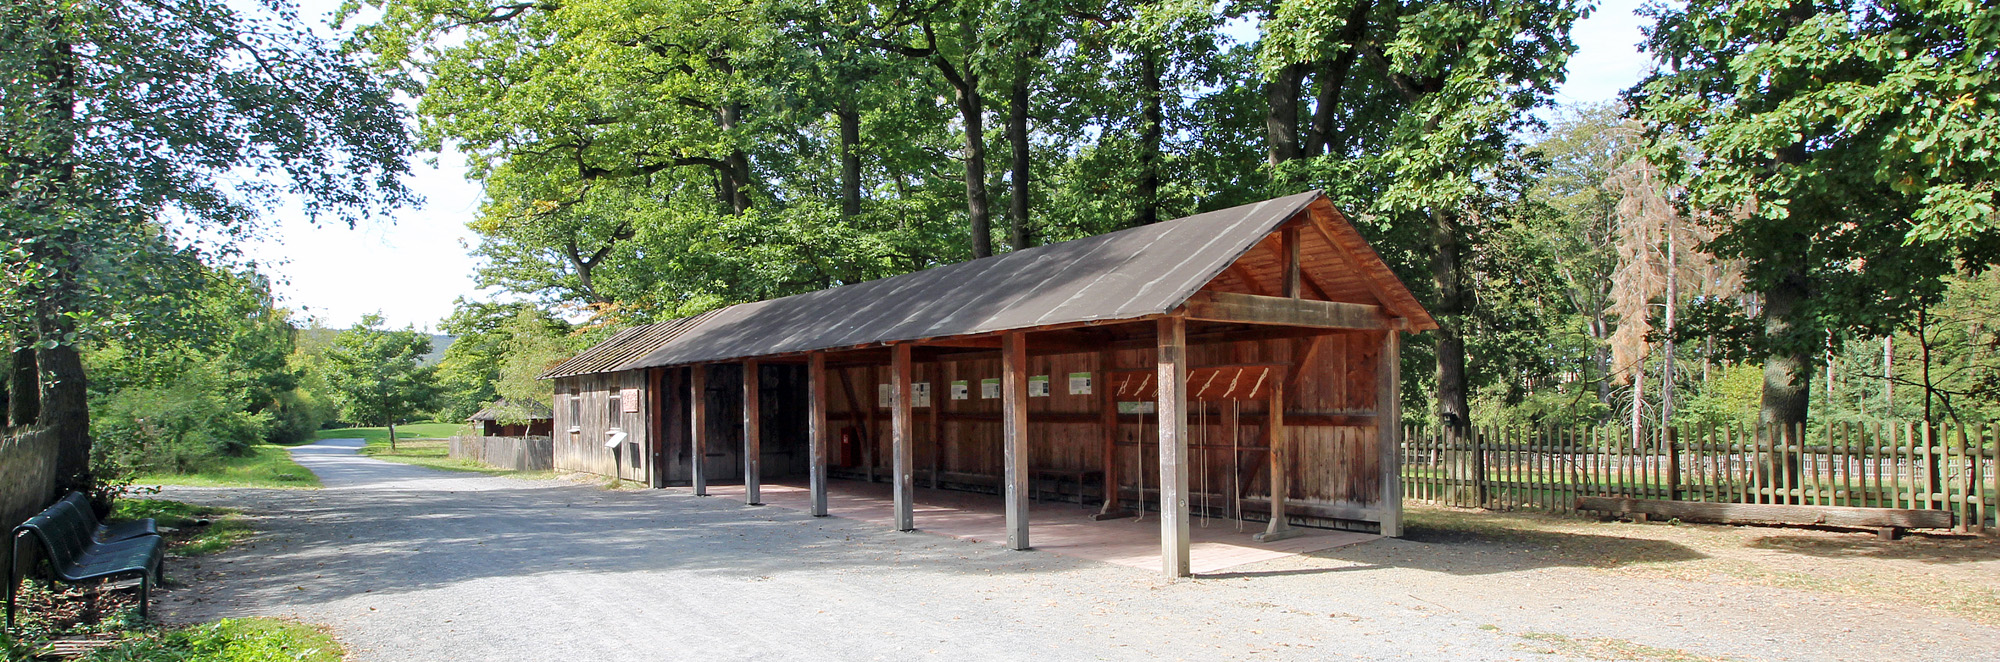 Holzhütte mit offener Front und Dach auf geschottertem Untergrund